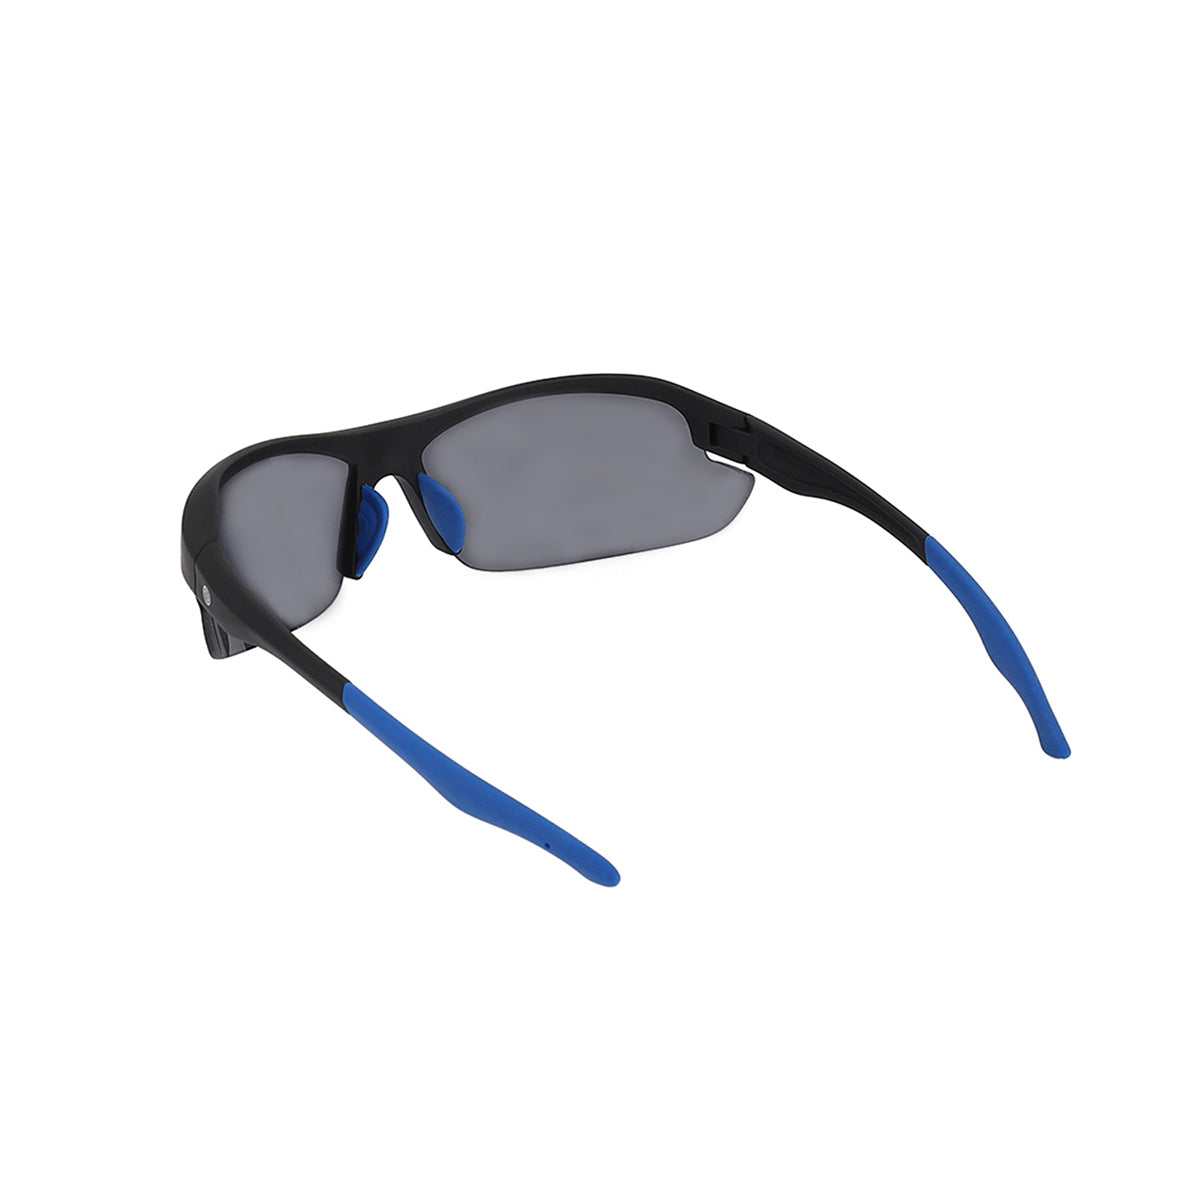 Carlton London Black & Blue Toned Uv Protected Sports Sunglasses For Men